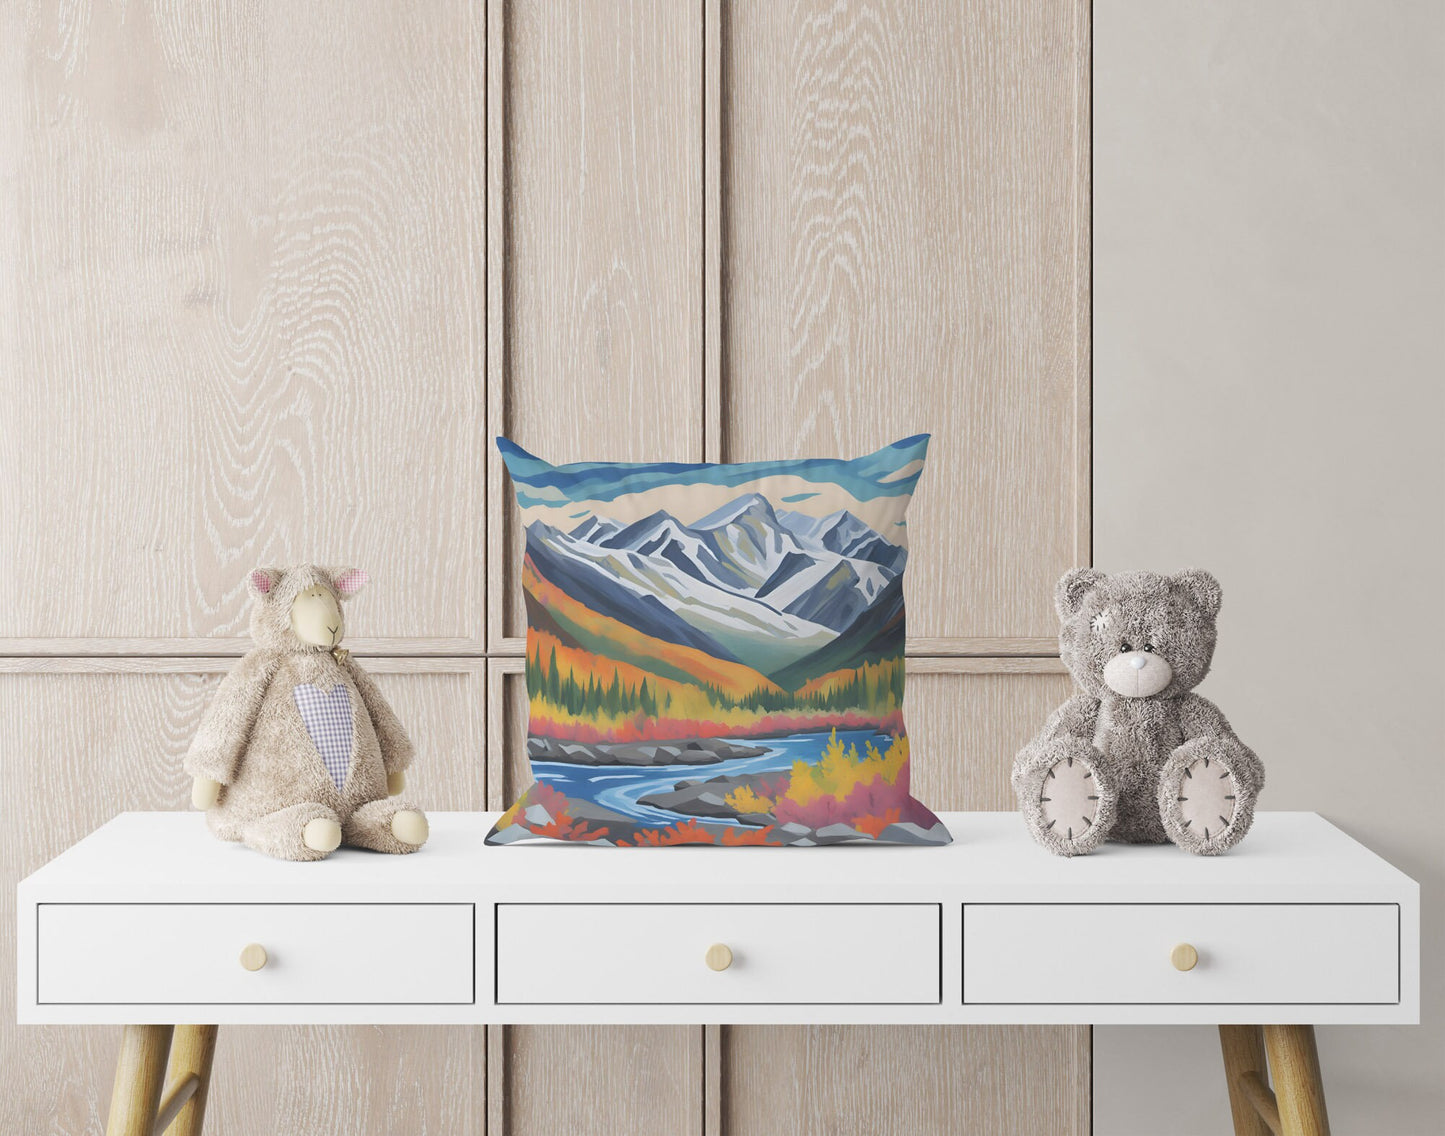 Wrangell-St. Elias National Park Alaska, Tapestry Pillows, Usa Travel Pillow, Artist Pillow, 20X20 Pillow, Home Decor Pillow, Holiday Gift